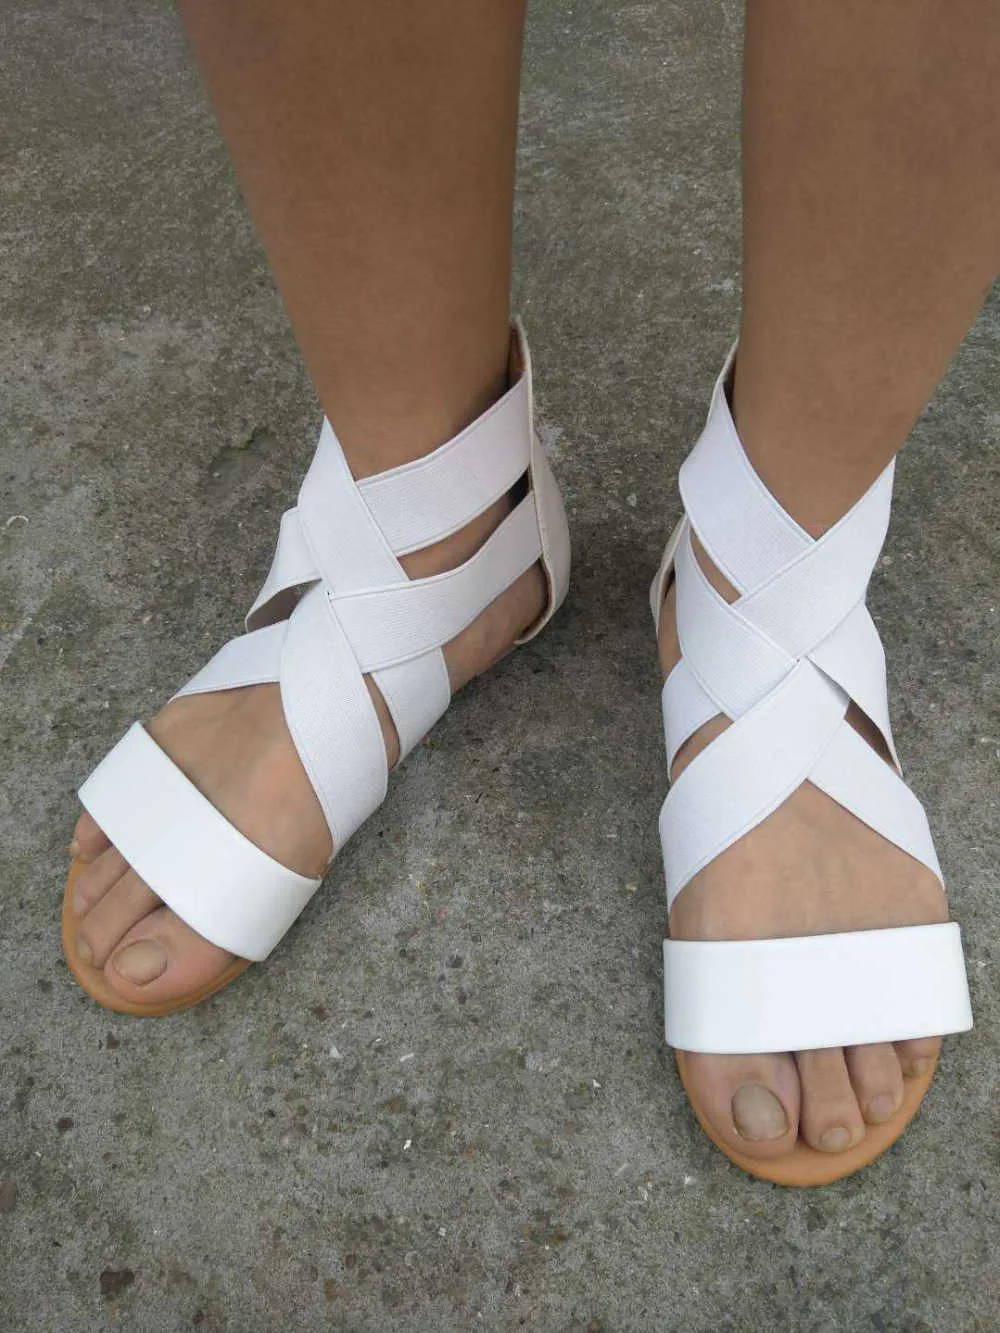 IMKKG Yaz Sandalet Kadınlar Rahat Ayakkabılar Kadın Gladyatör Düz Roma Zip Feminina Yumuşak Alt Sandalia M192 Y0721